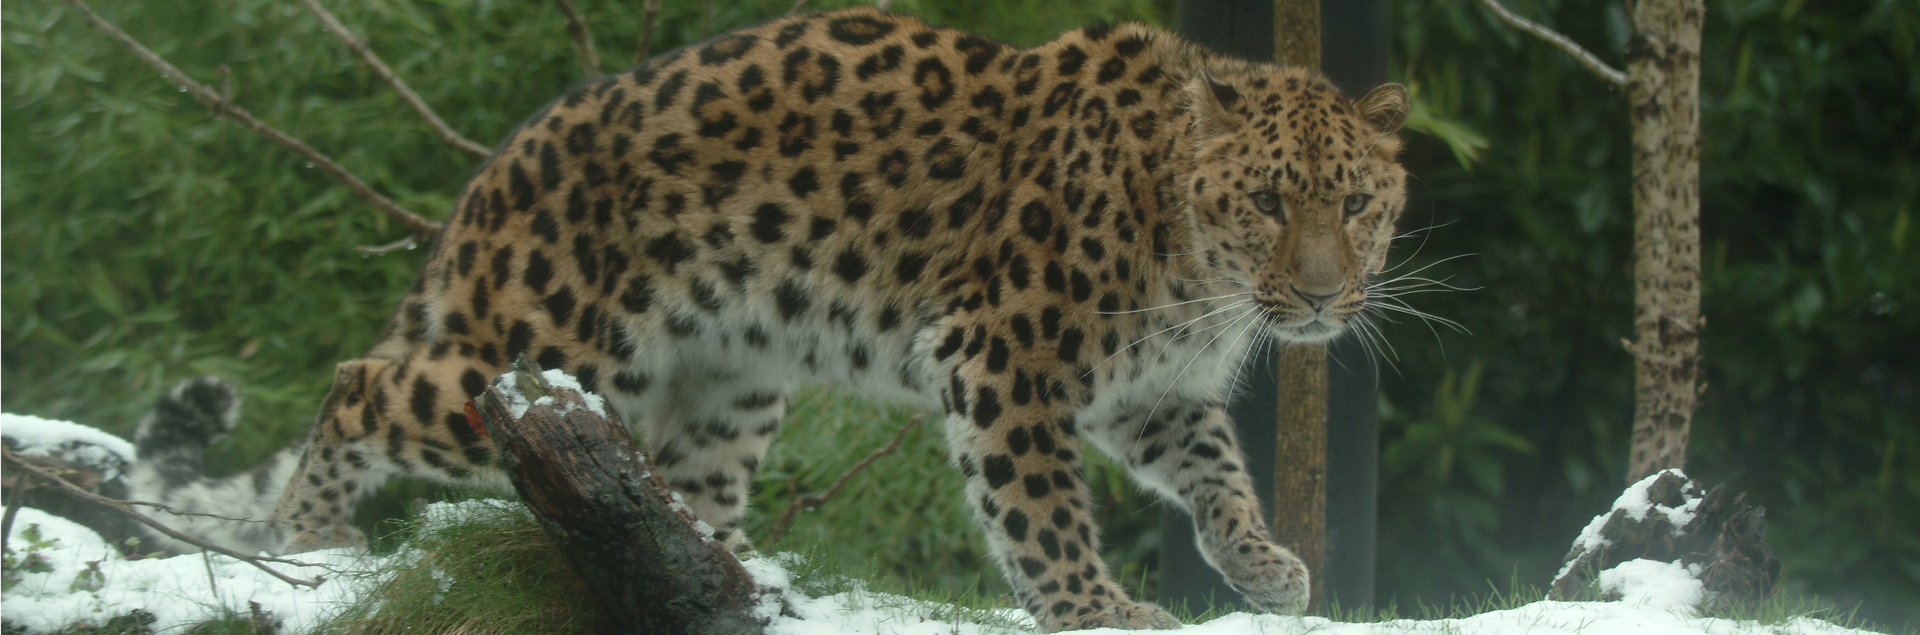 amur-leopard-1920x635